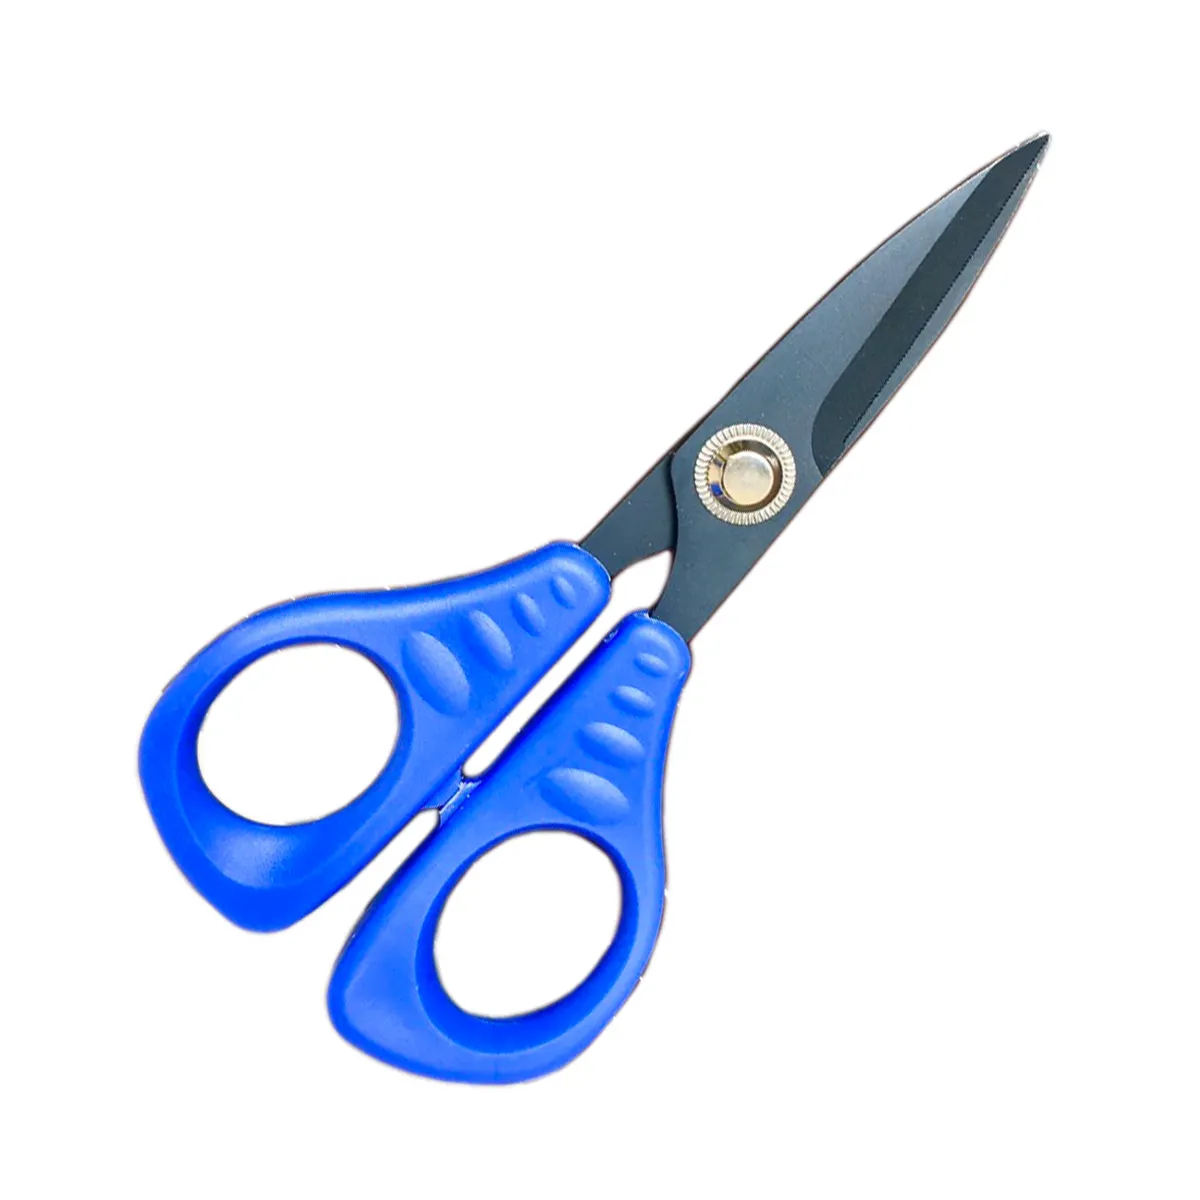 2020 New Household Stationary Kitchen Scissors l 420 J2 Stainless Steel l人間工学的ハンドルl芸術品や工芸品lノンスティック表面